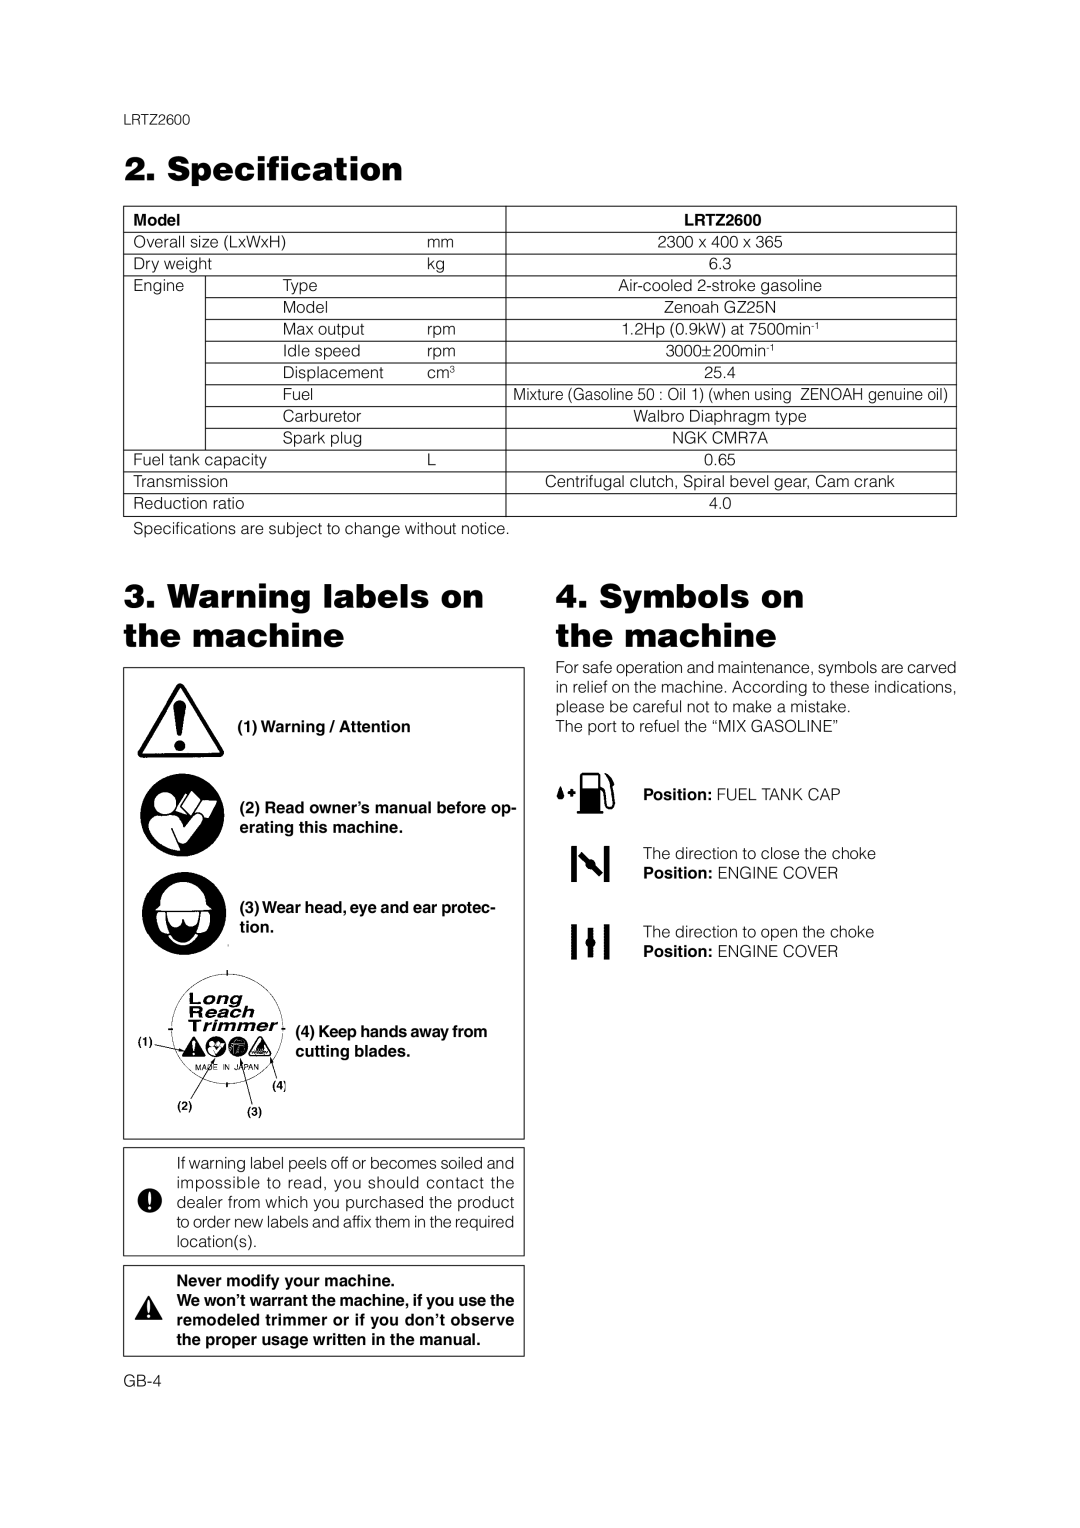 Zenoah LRTZ2600 Specification, Warning labels on the machine, Symbols on the machine, Model, Warning / Attention 